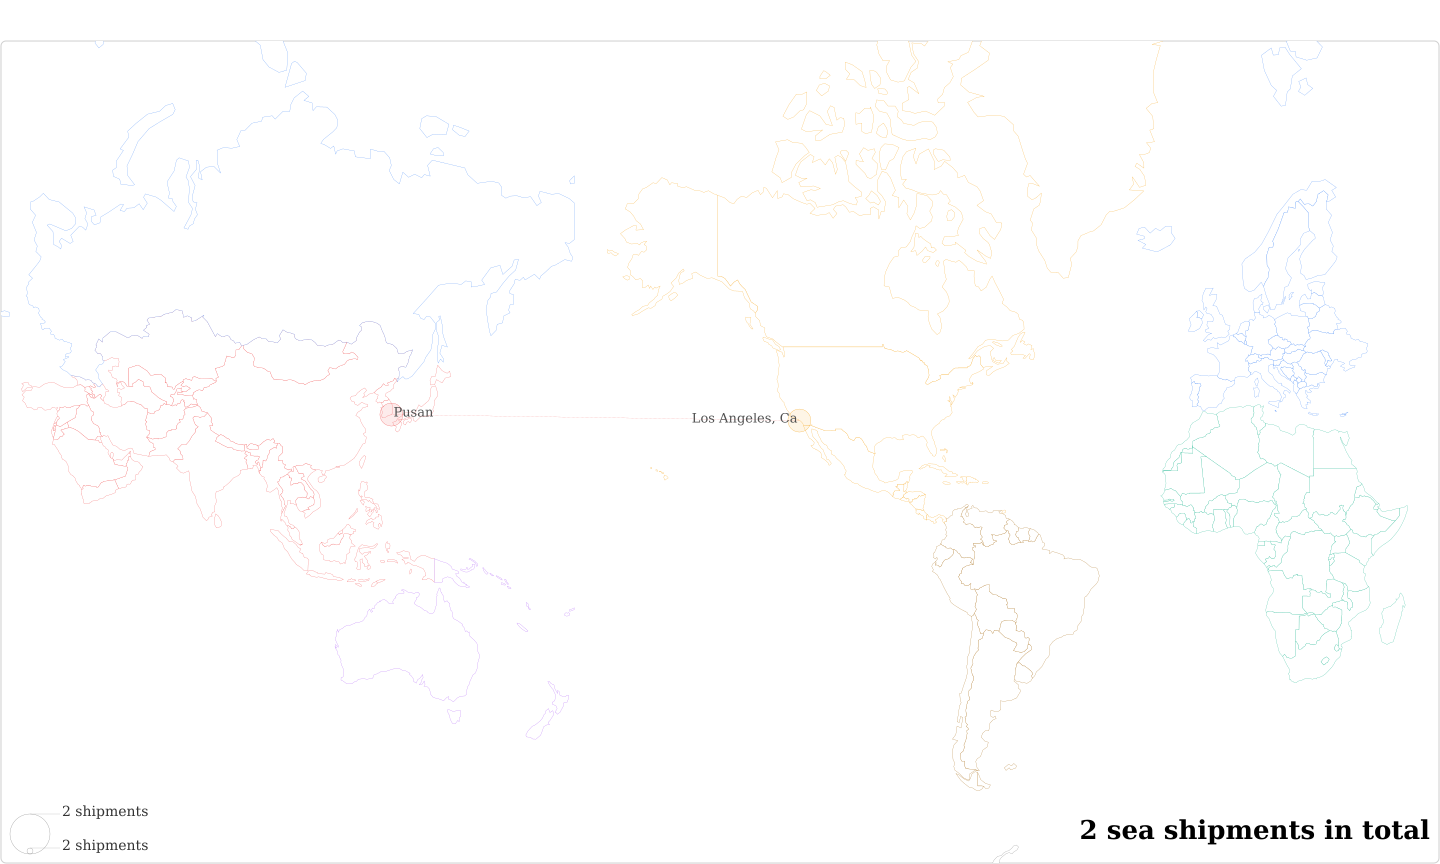 Nasa Aircraft Operations's Imports Per Country Map